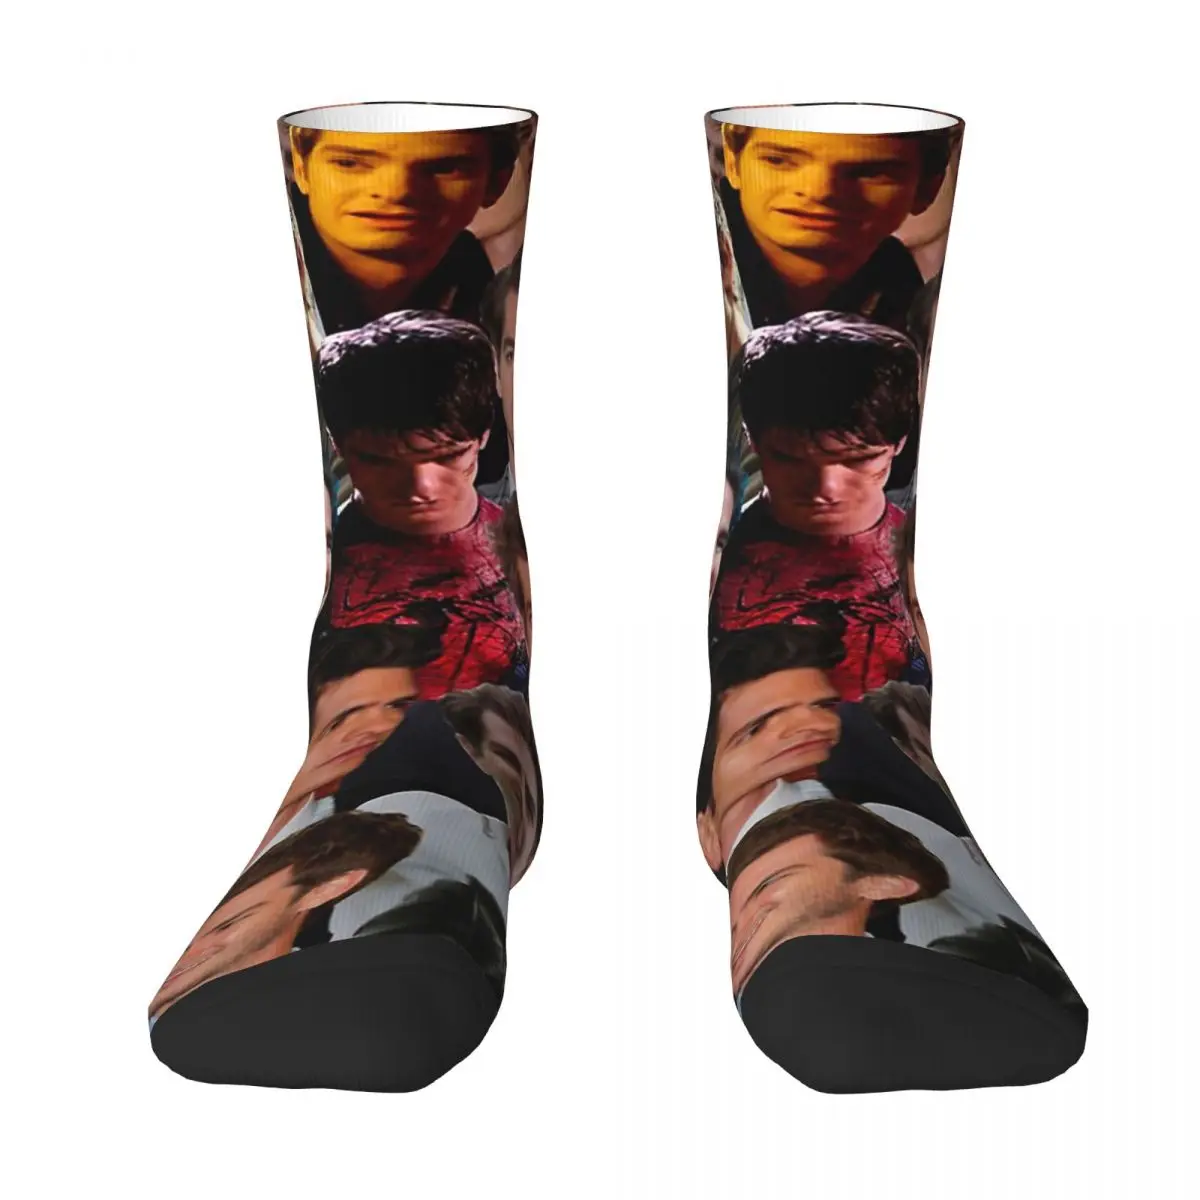 Andrew Garfield Photo Collage Adult Socks,Unisex socks,men Socks women Socks